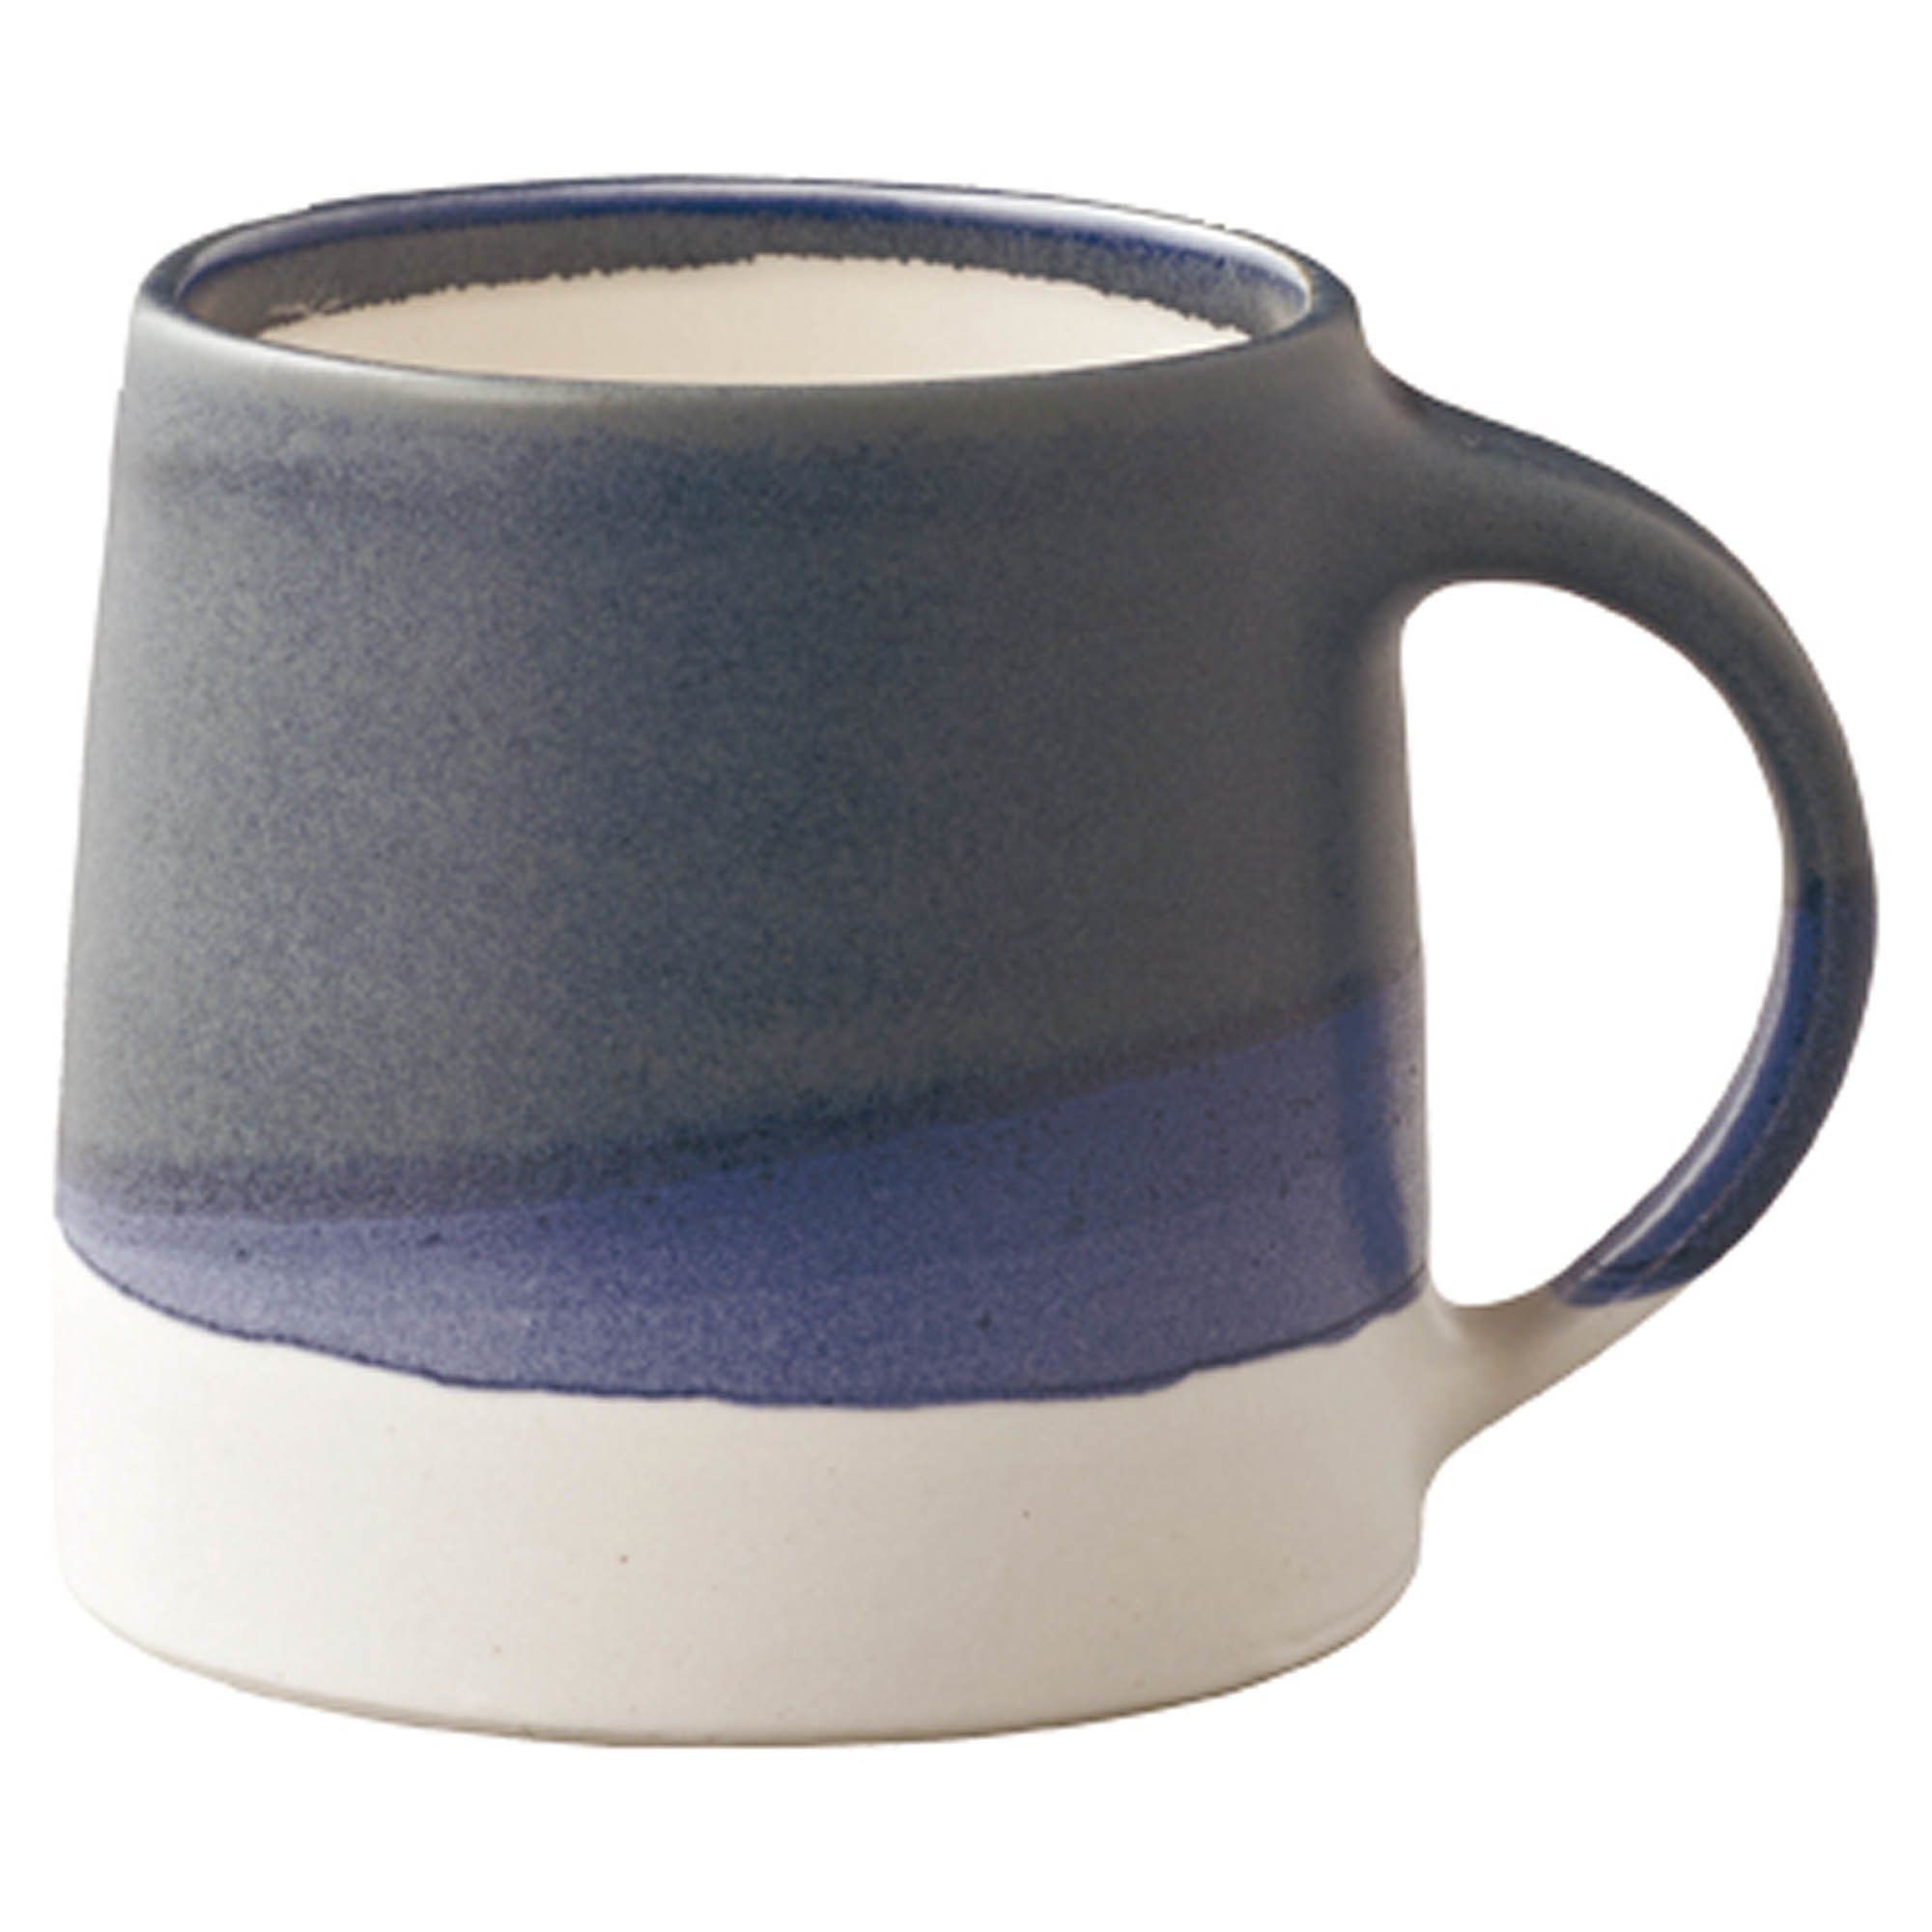 Kinto - Tasse en porcelaine - Bleu marine